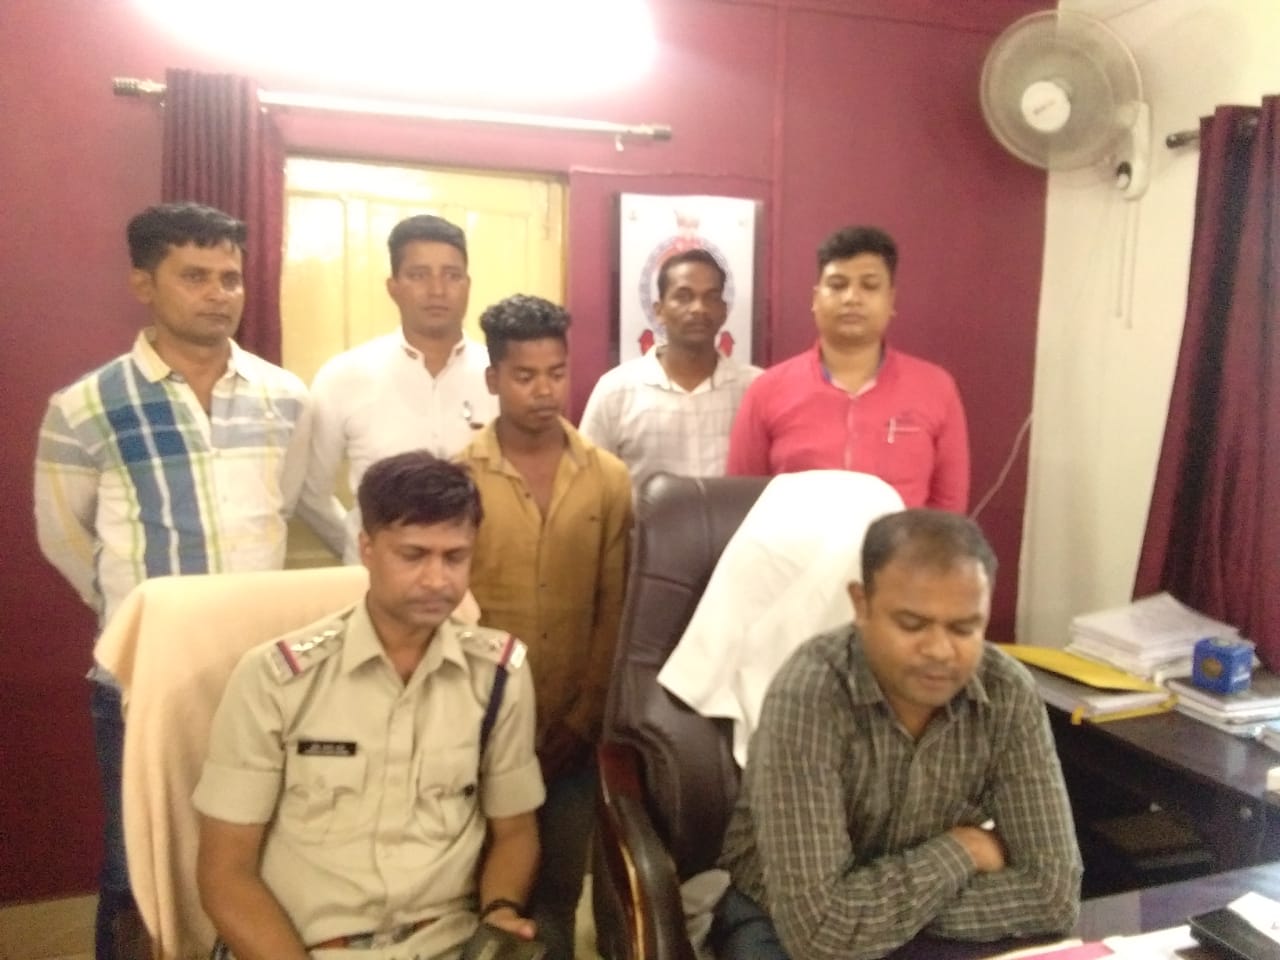 पुलिस ने बताया कि मानिकपुर चौकी क्षेत्र में हुई मोबाइल लूट के आरोप में महेश सोनी के खिलाफ केस दर्ज है